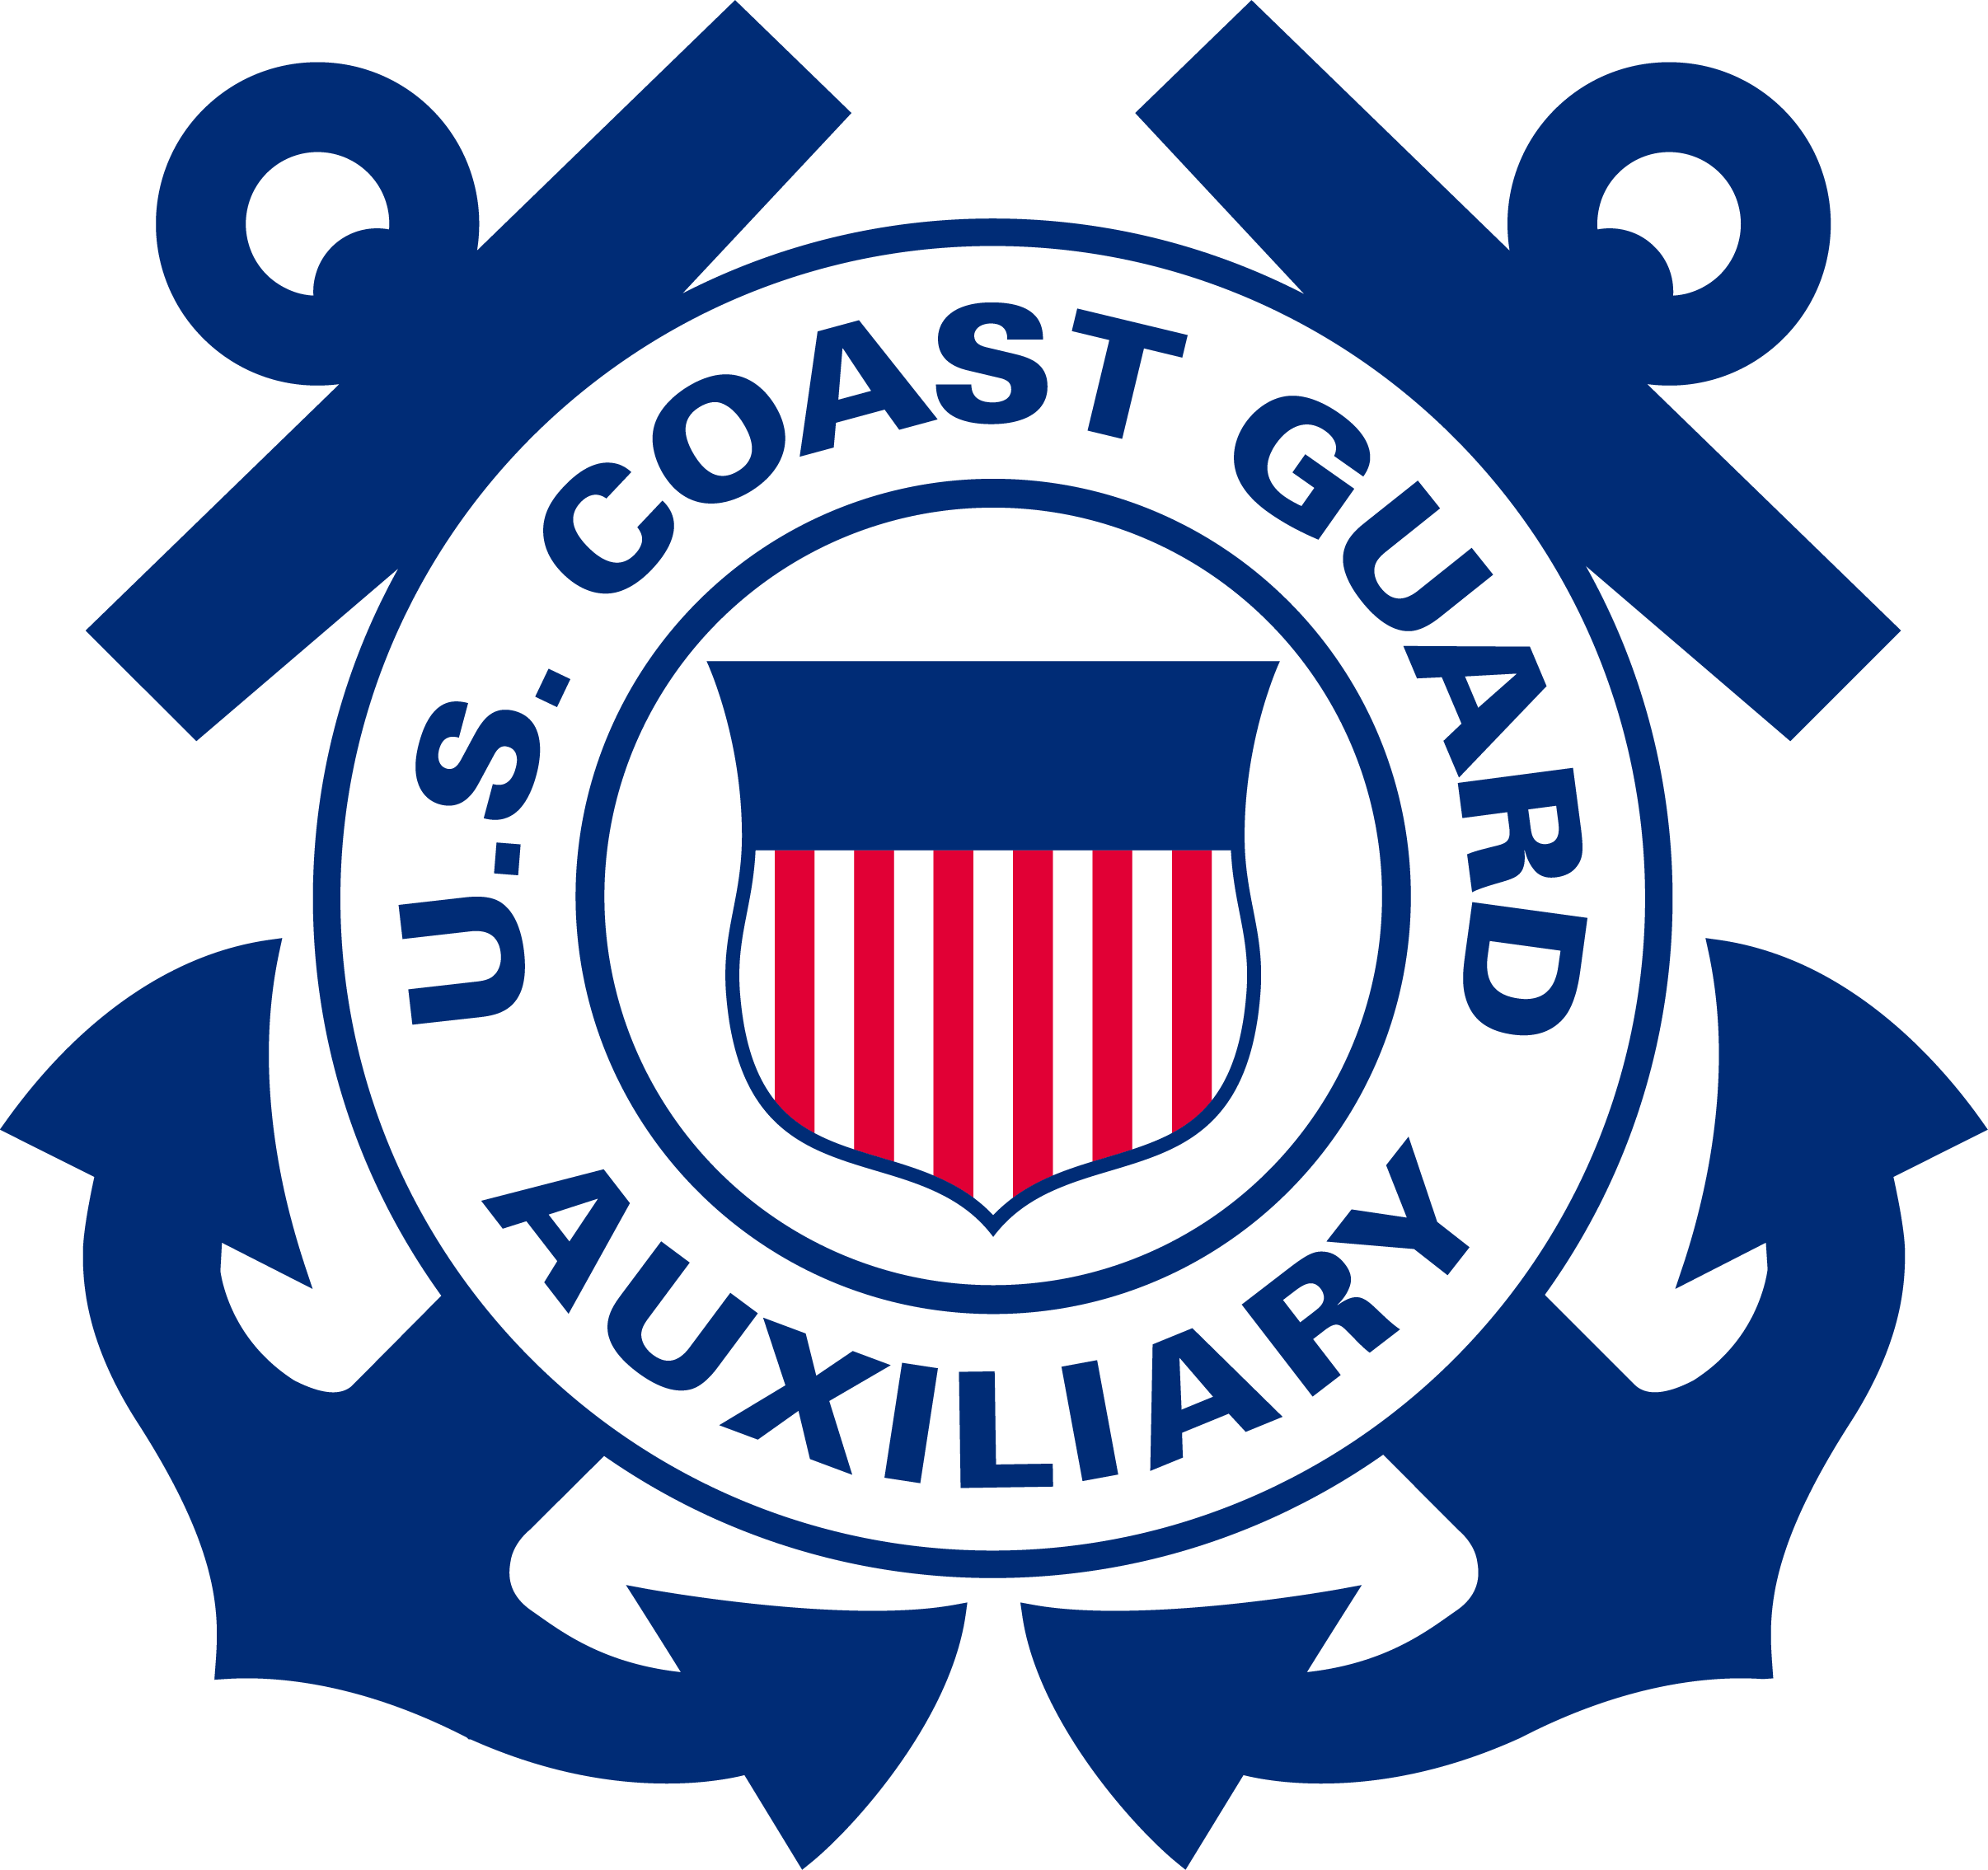 U.S. Coast Guard Auxiliary, Standard Emblem